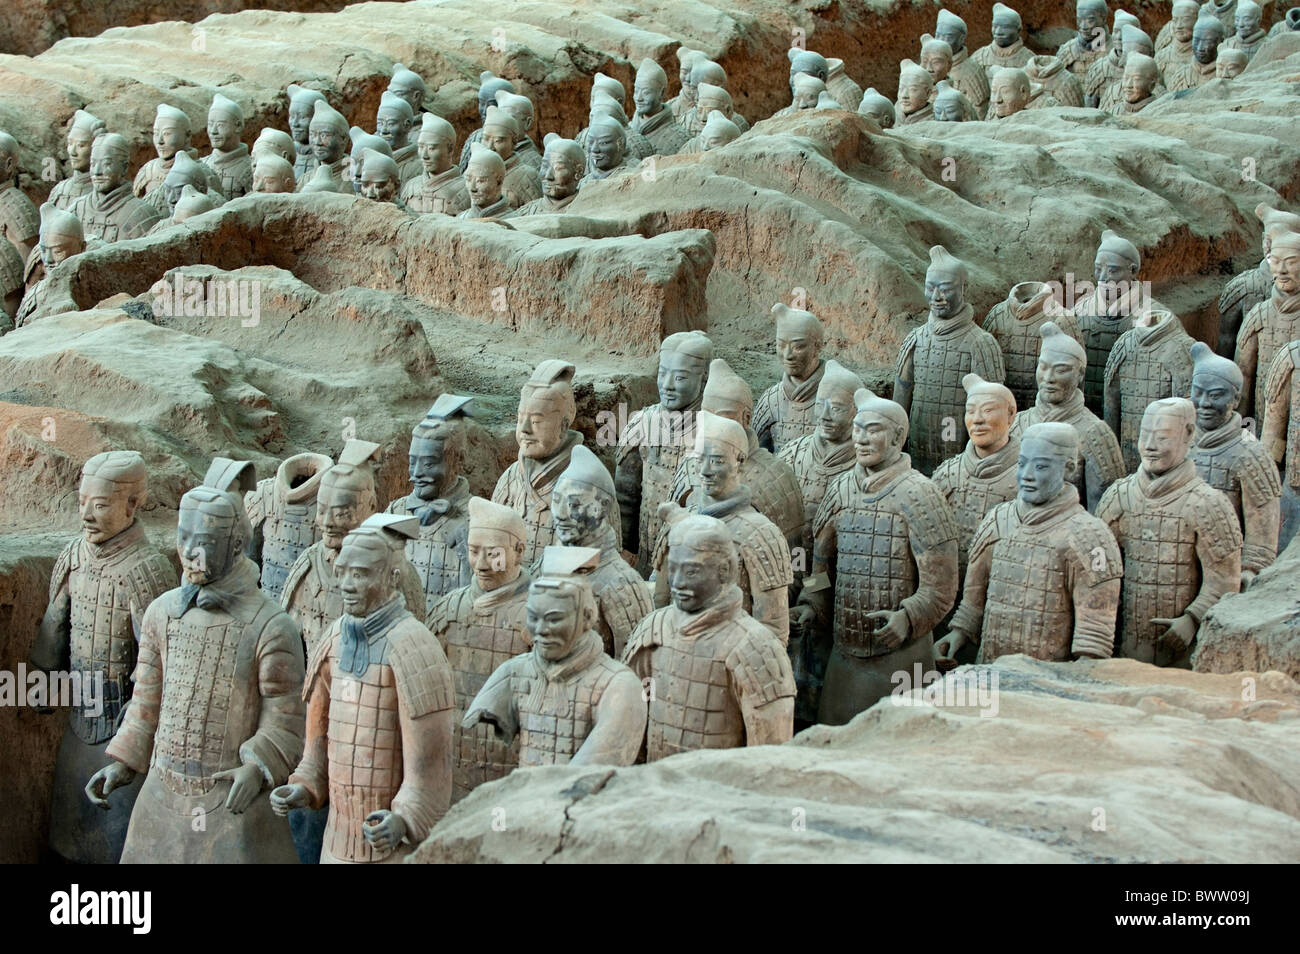 Ejército de terracota, Xi'an, China Foto de stock